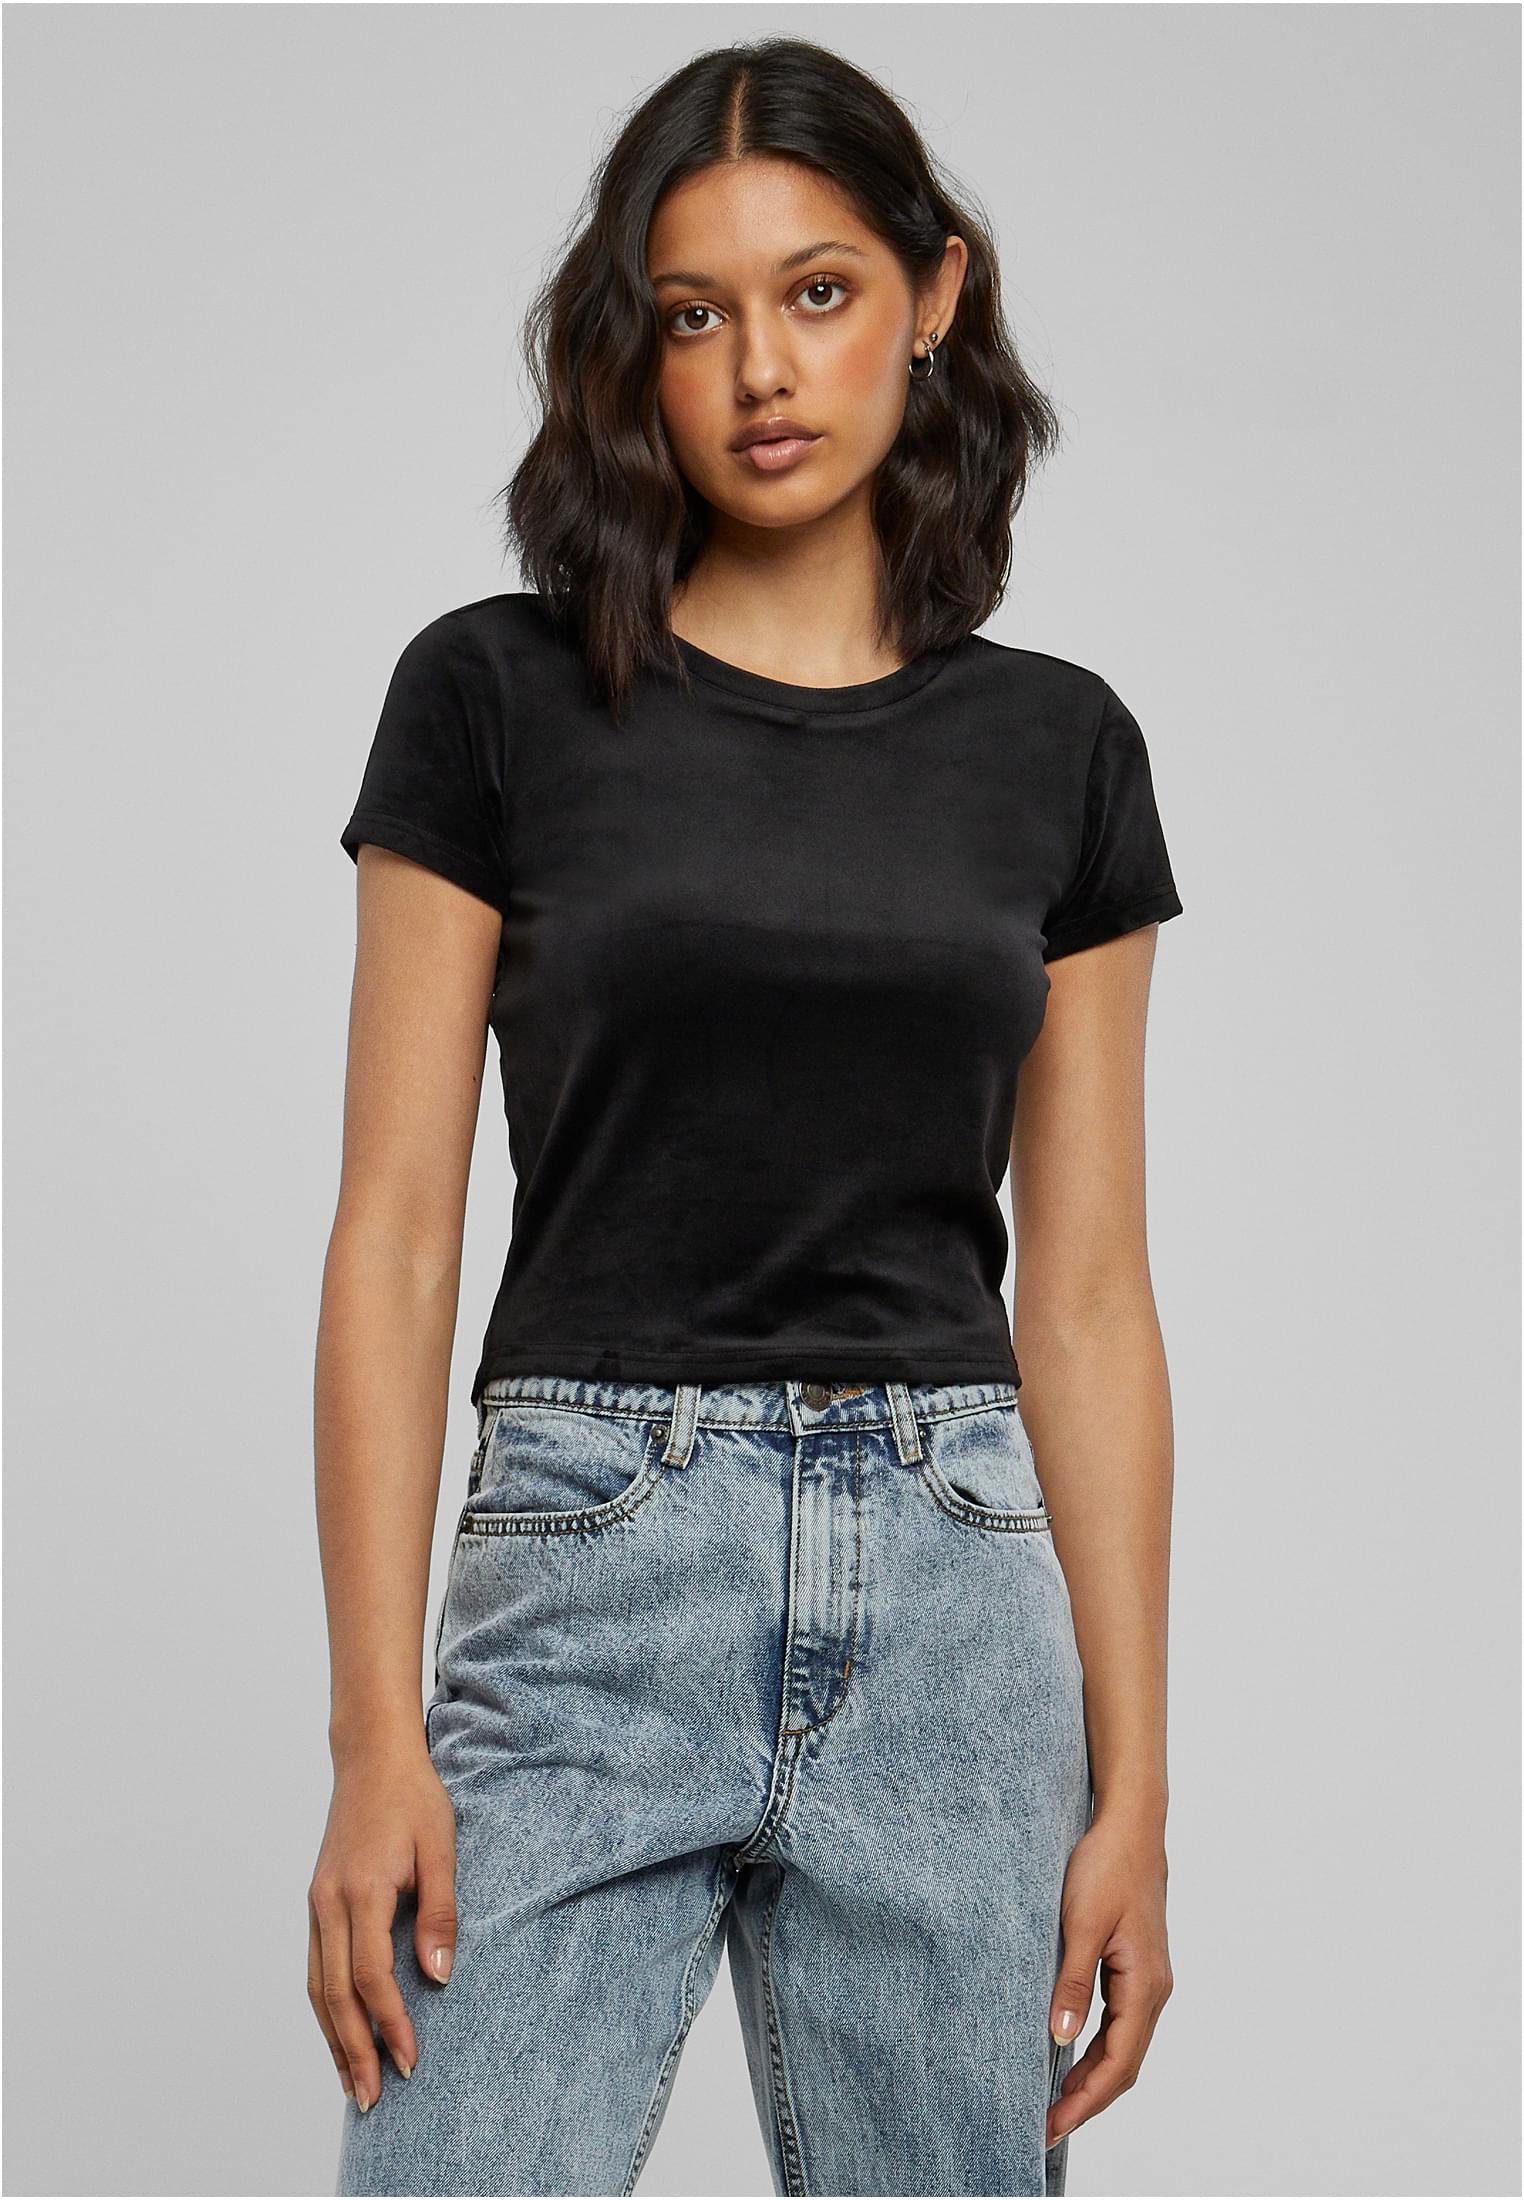 Women's short velvet T-shirt in black color